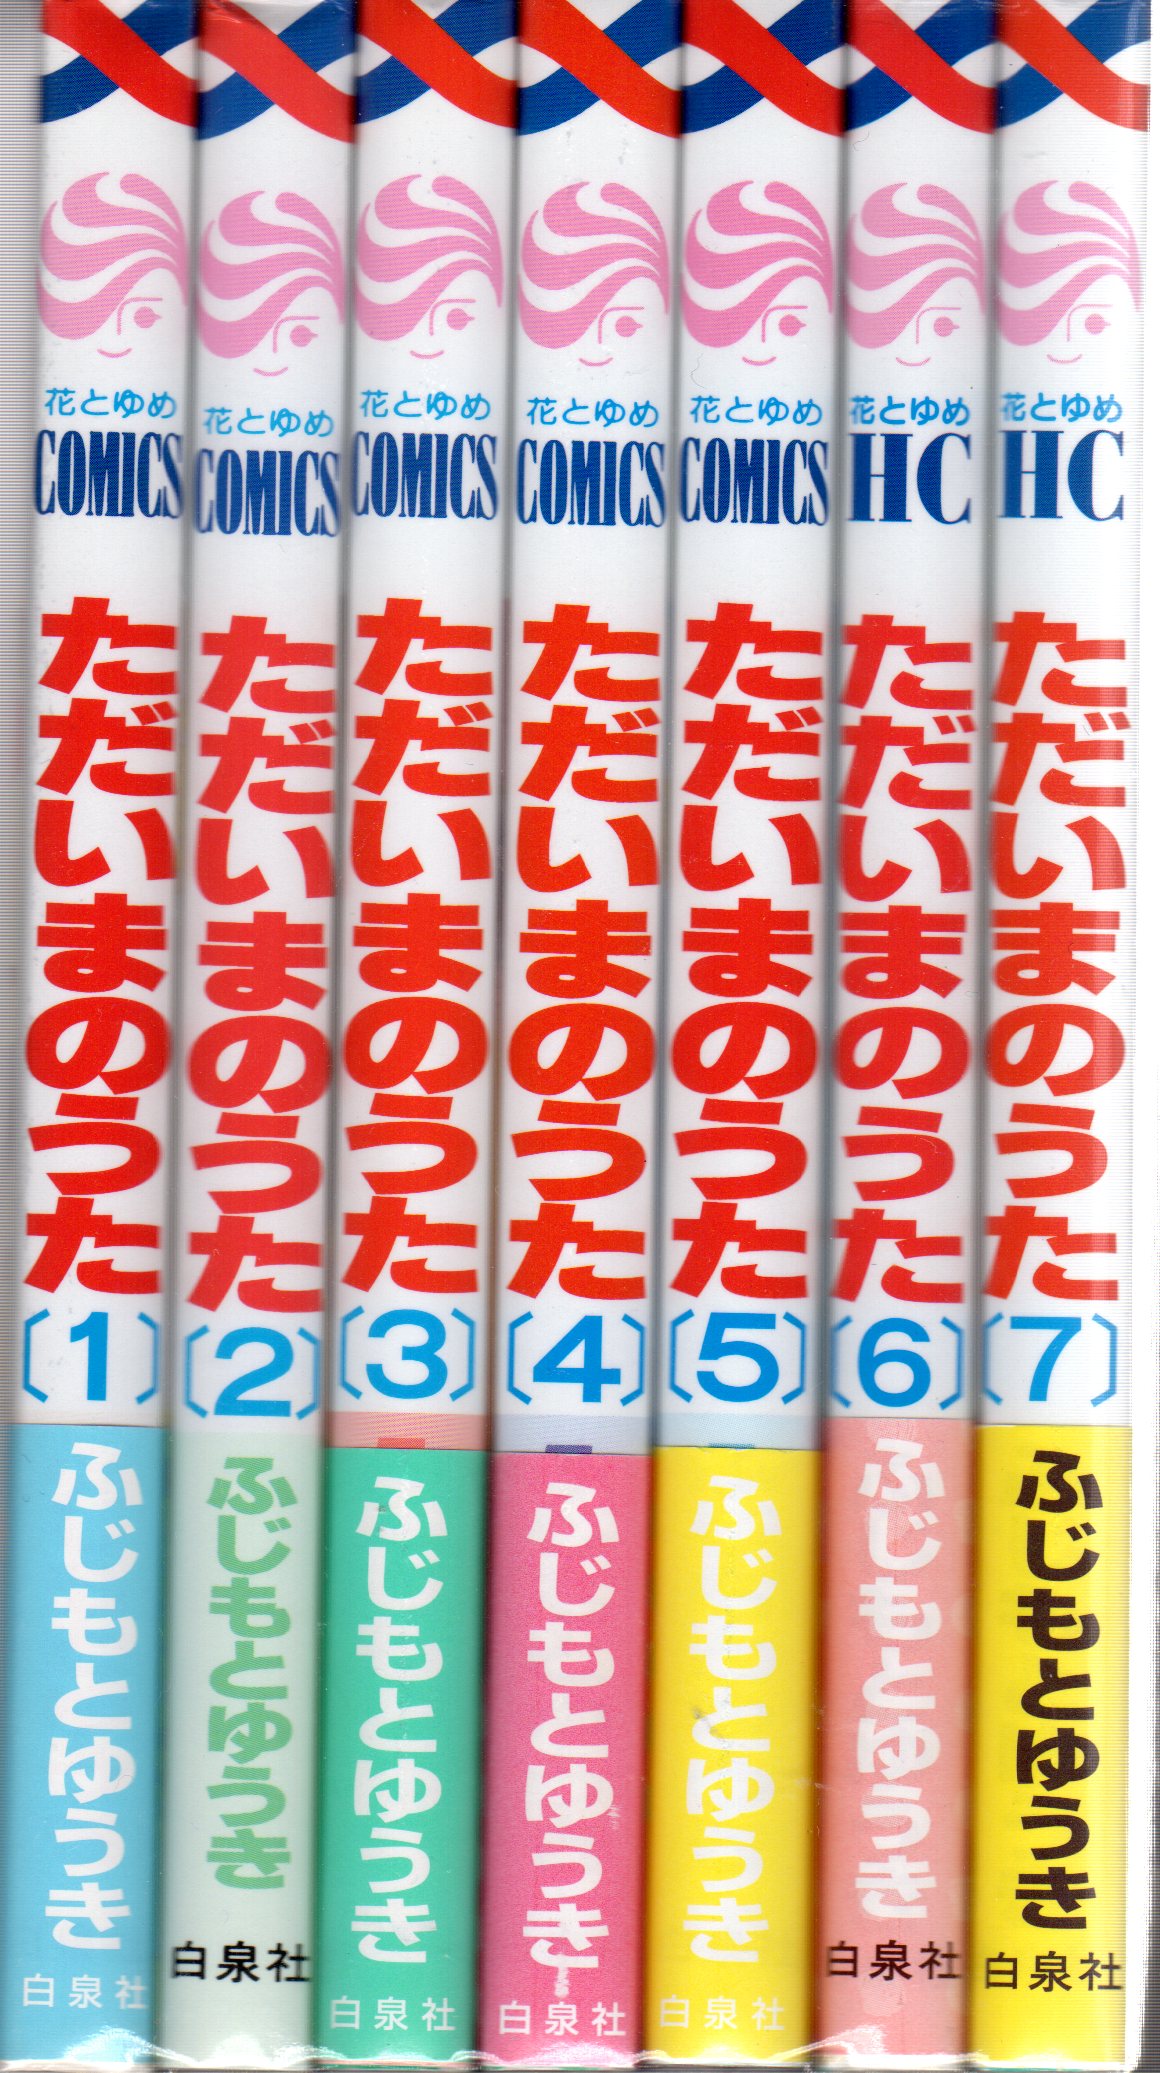 白泉社 花とゆめコミックス ふじもとゆうき ただいまのうた 全7巻 セット まんだらけ Mandarake